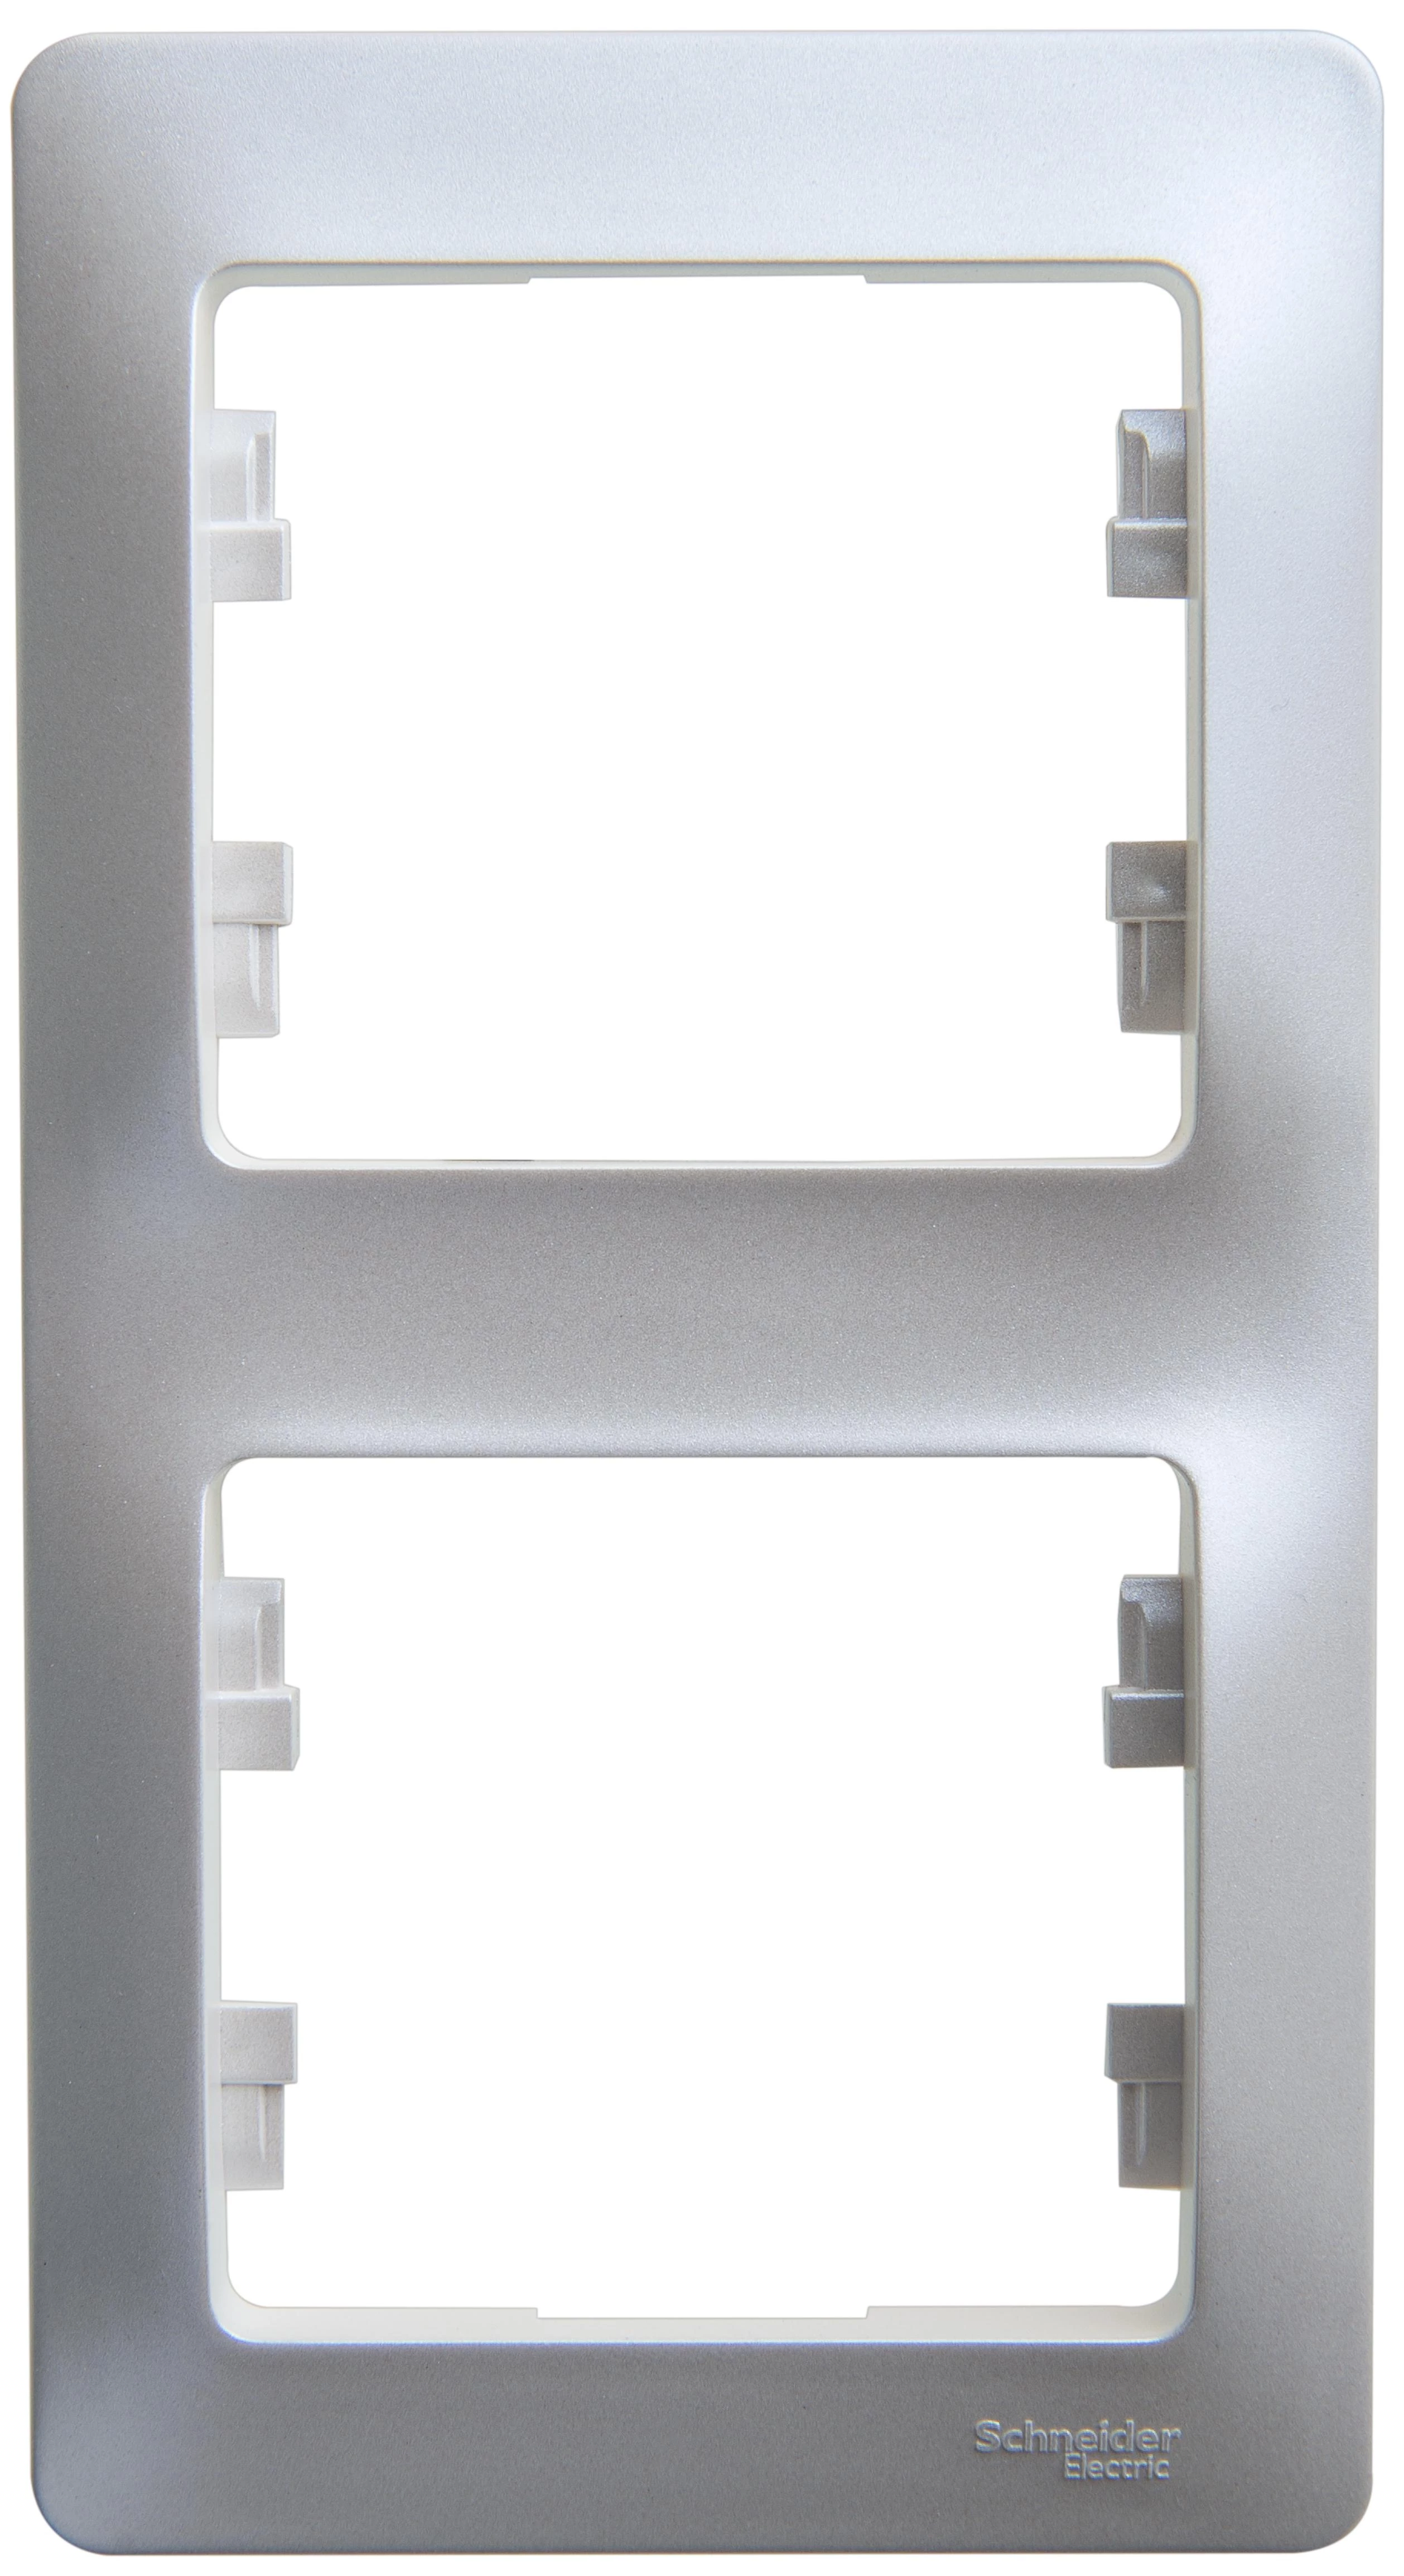  артикул GSL000606 название Рамка 2-ая (двойная) вертикальная , Перламутр, серия Glossa, Schneider Electric